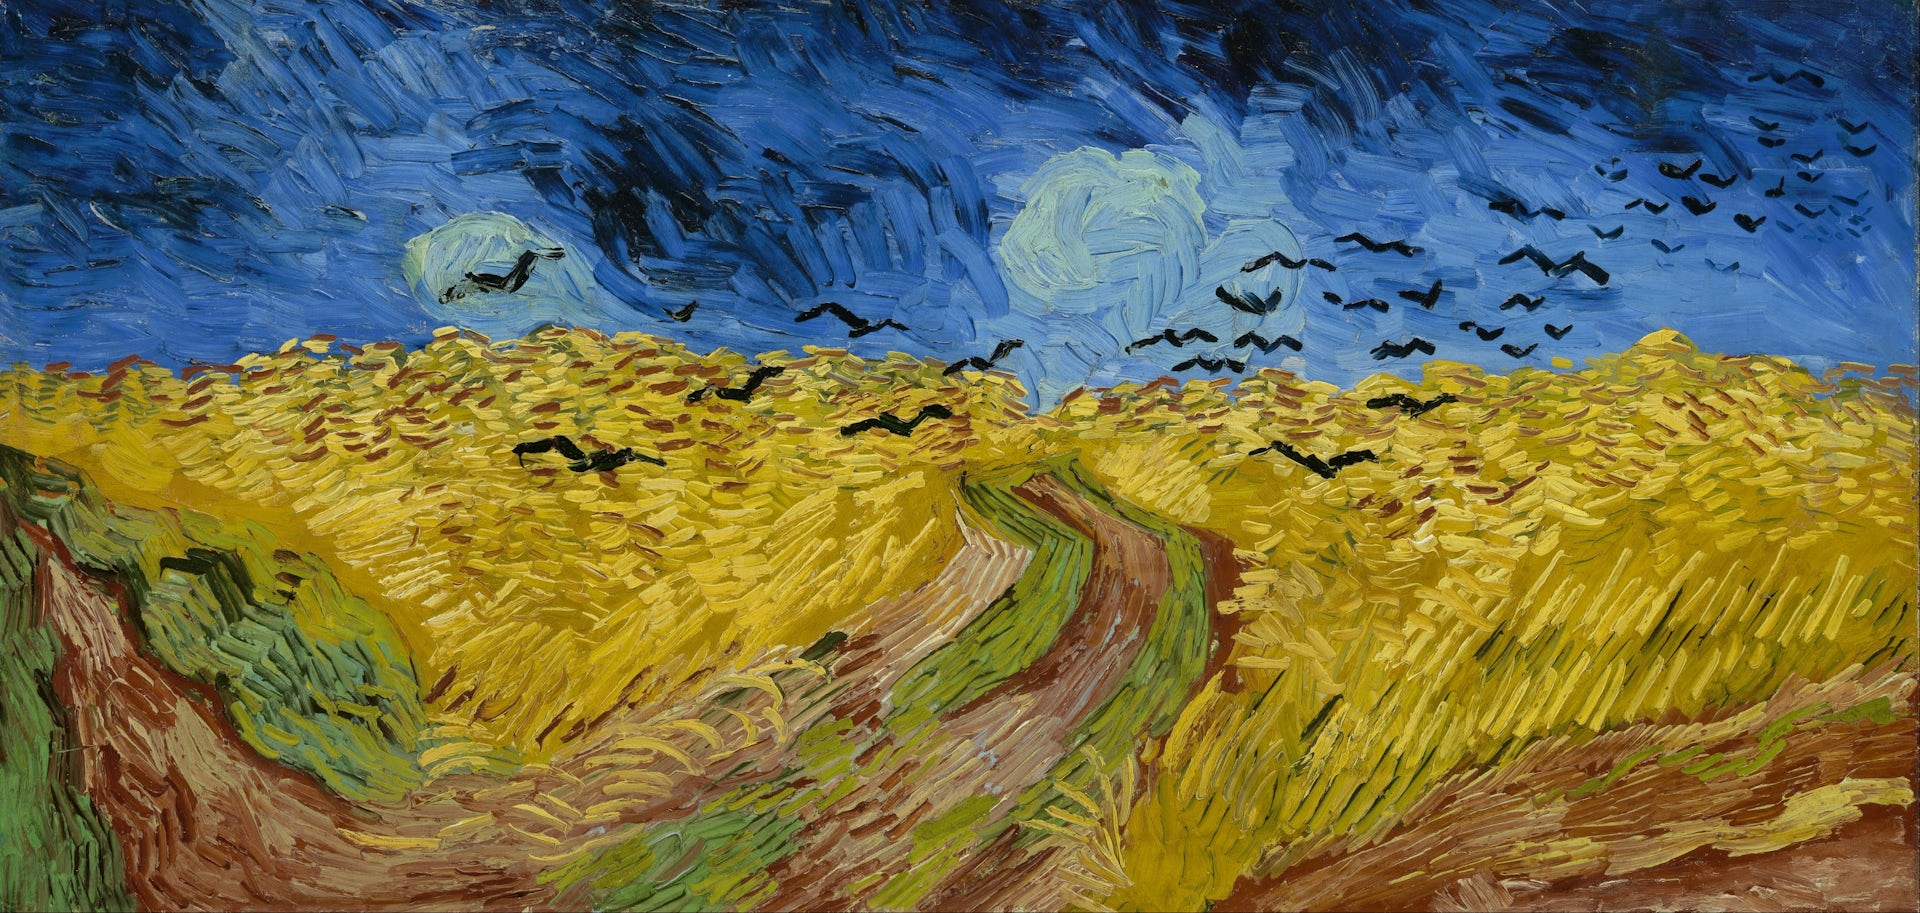 Qué misterios esconden las pinturas de Vincent van Gogh?